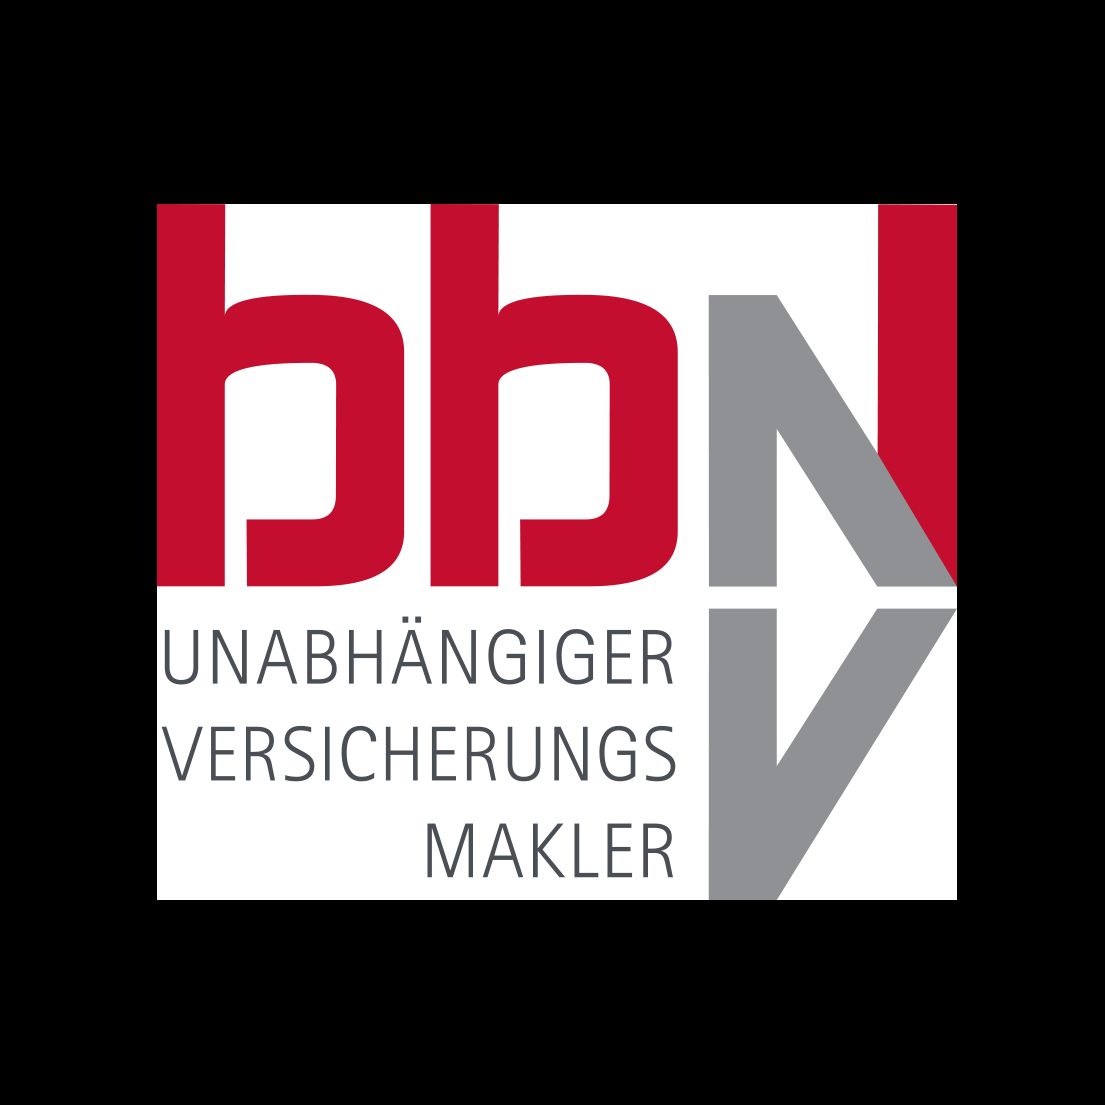 BBN Versicherungsmakler GmbH & Co. KG